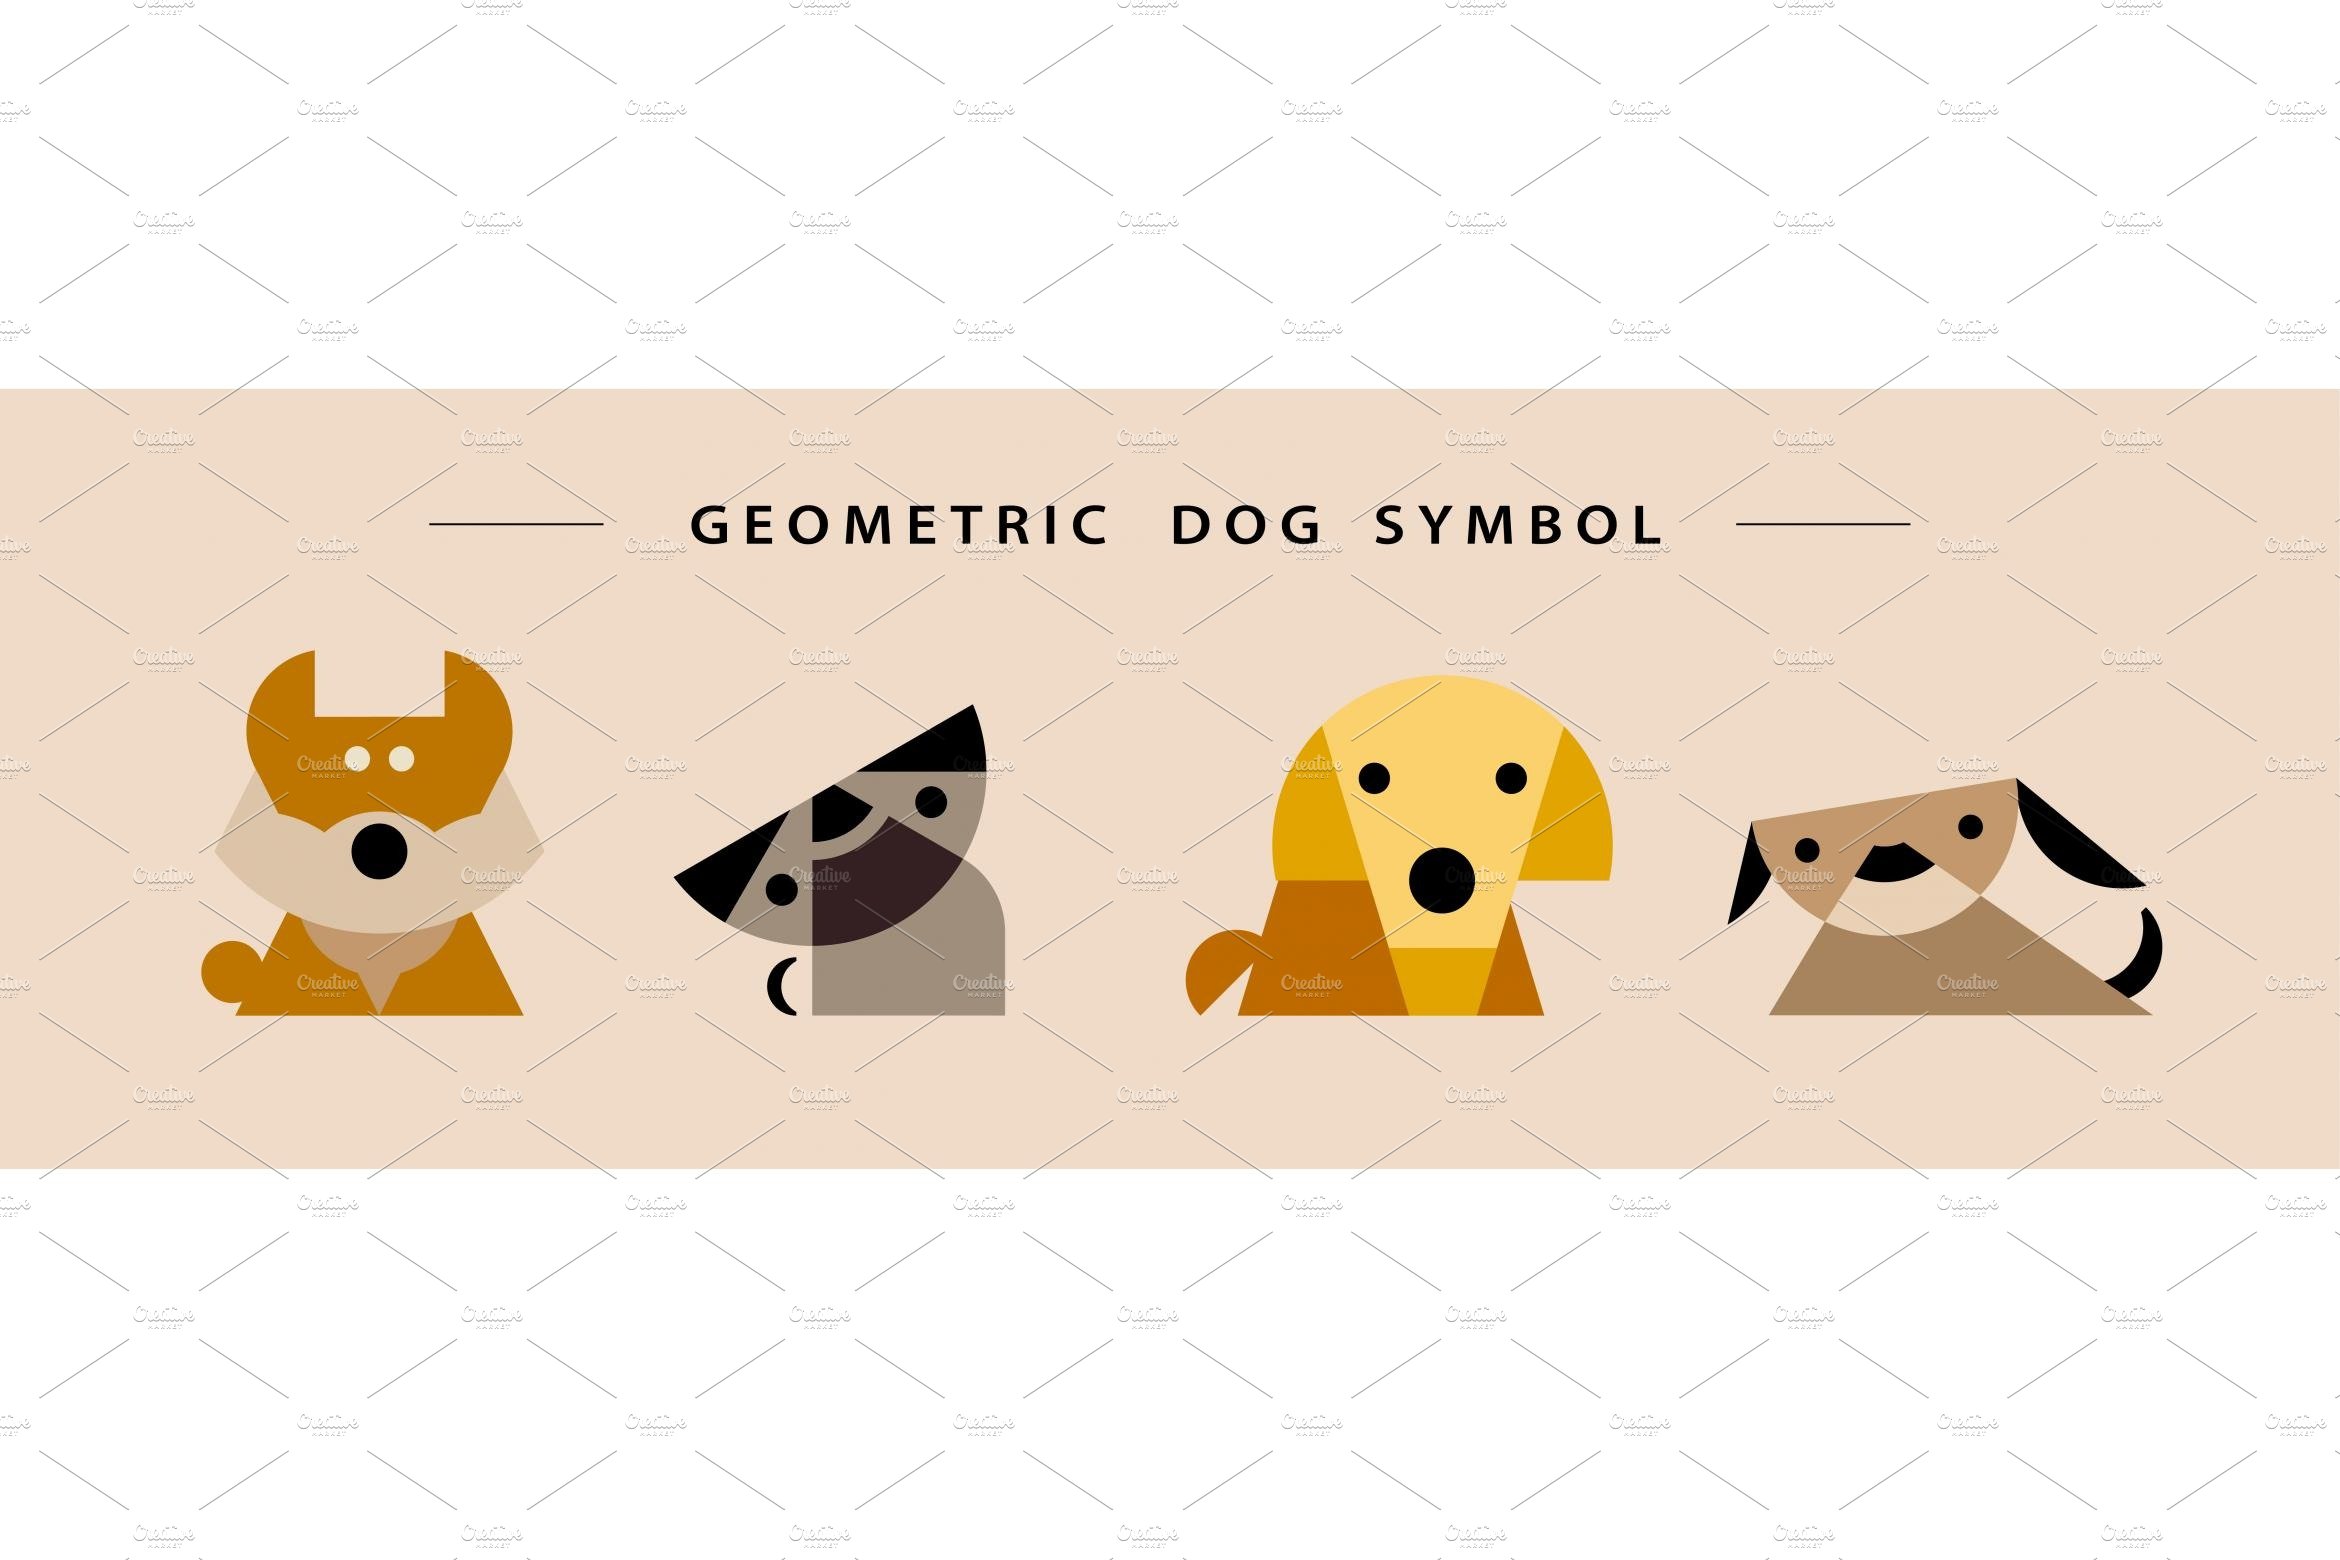 Origami dog symbols set cover image.